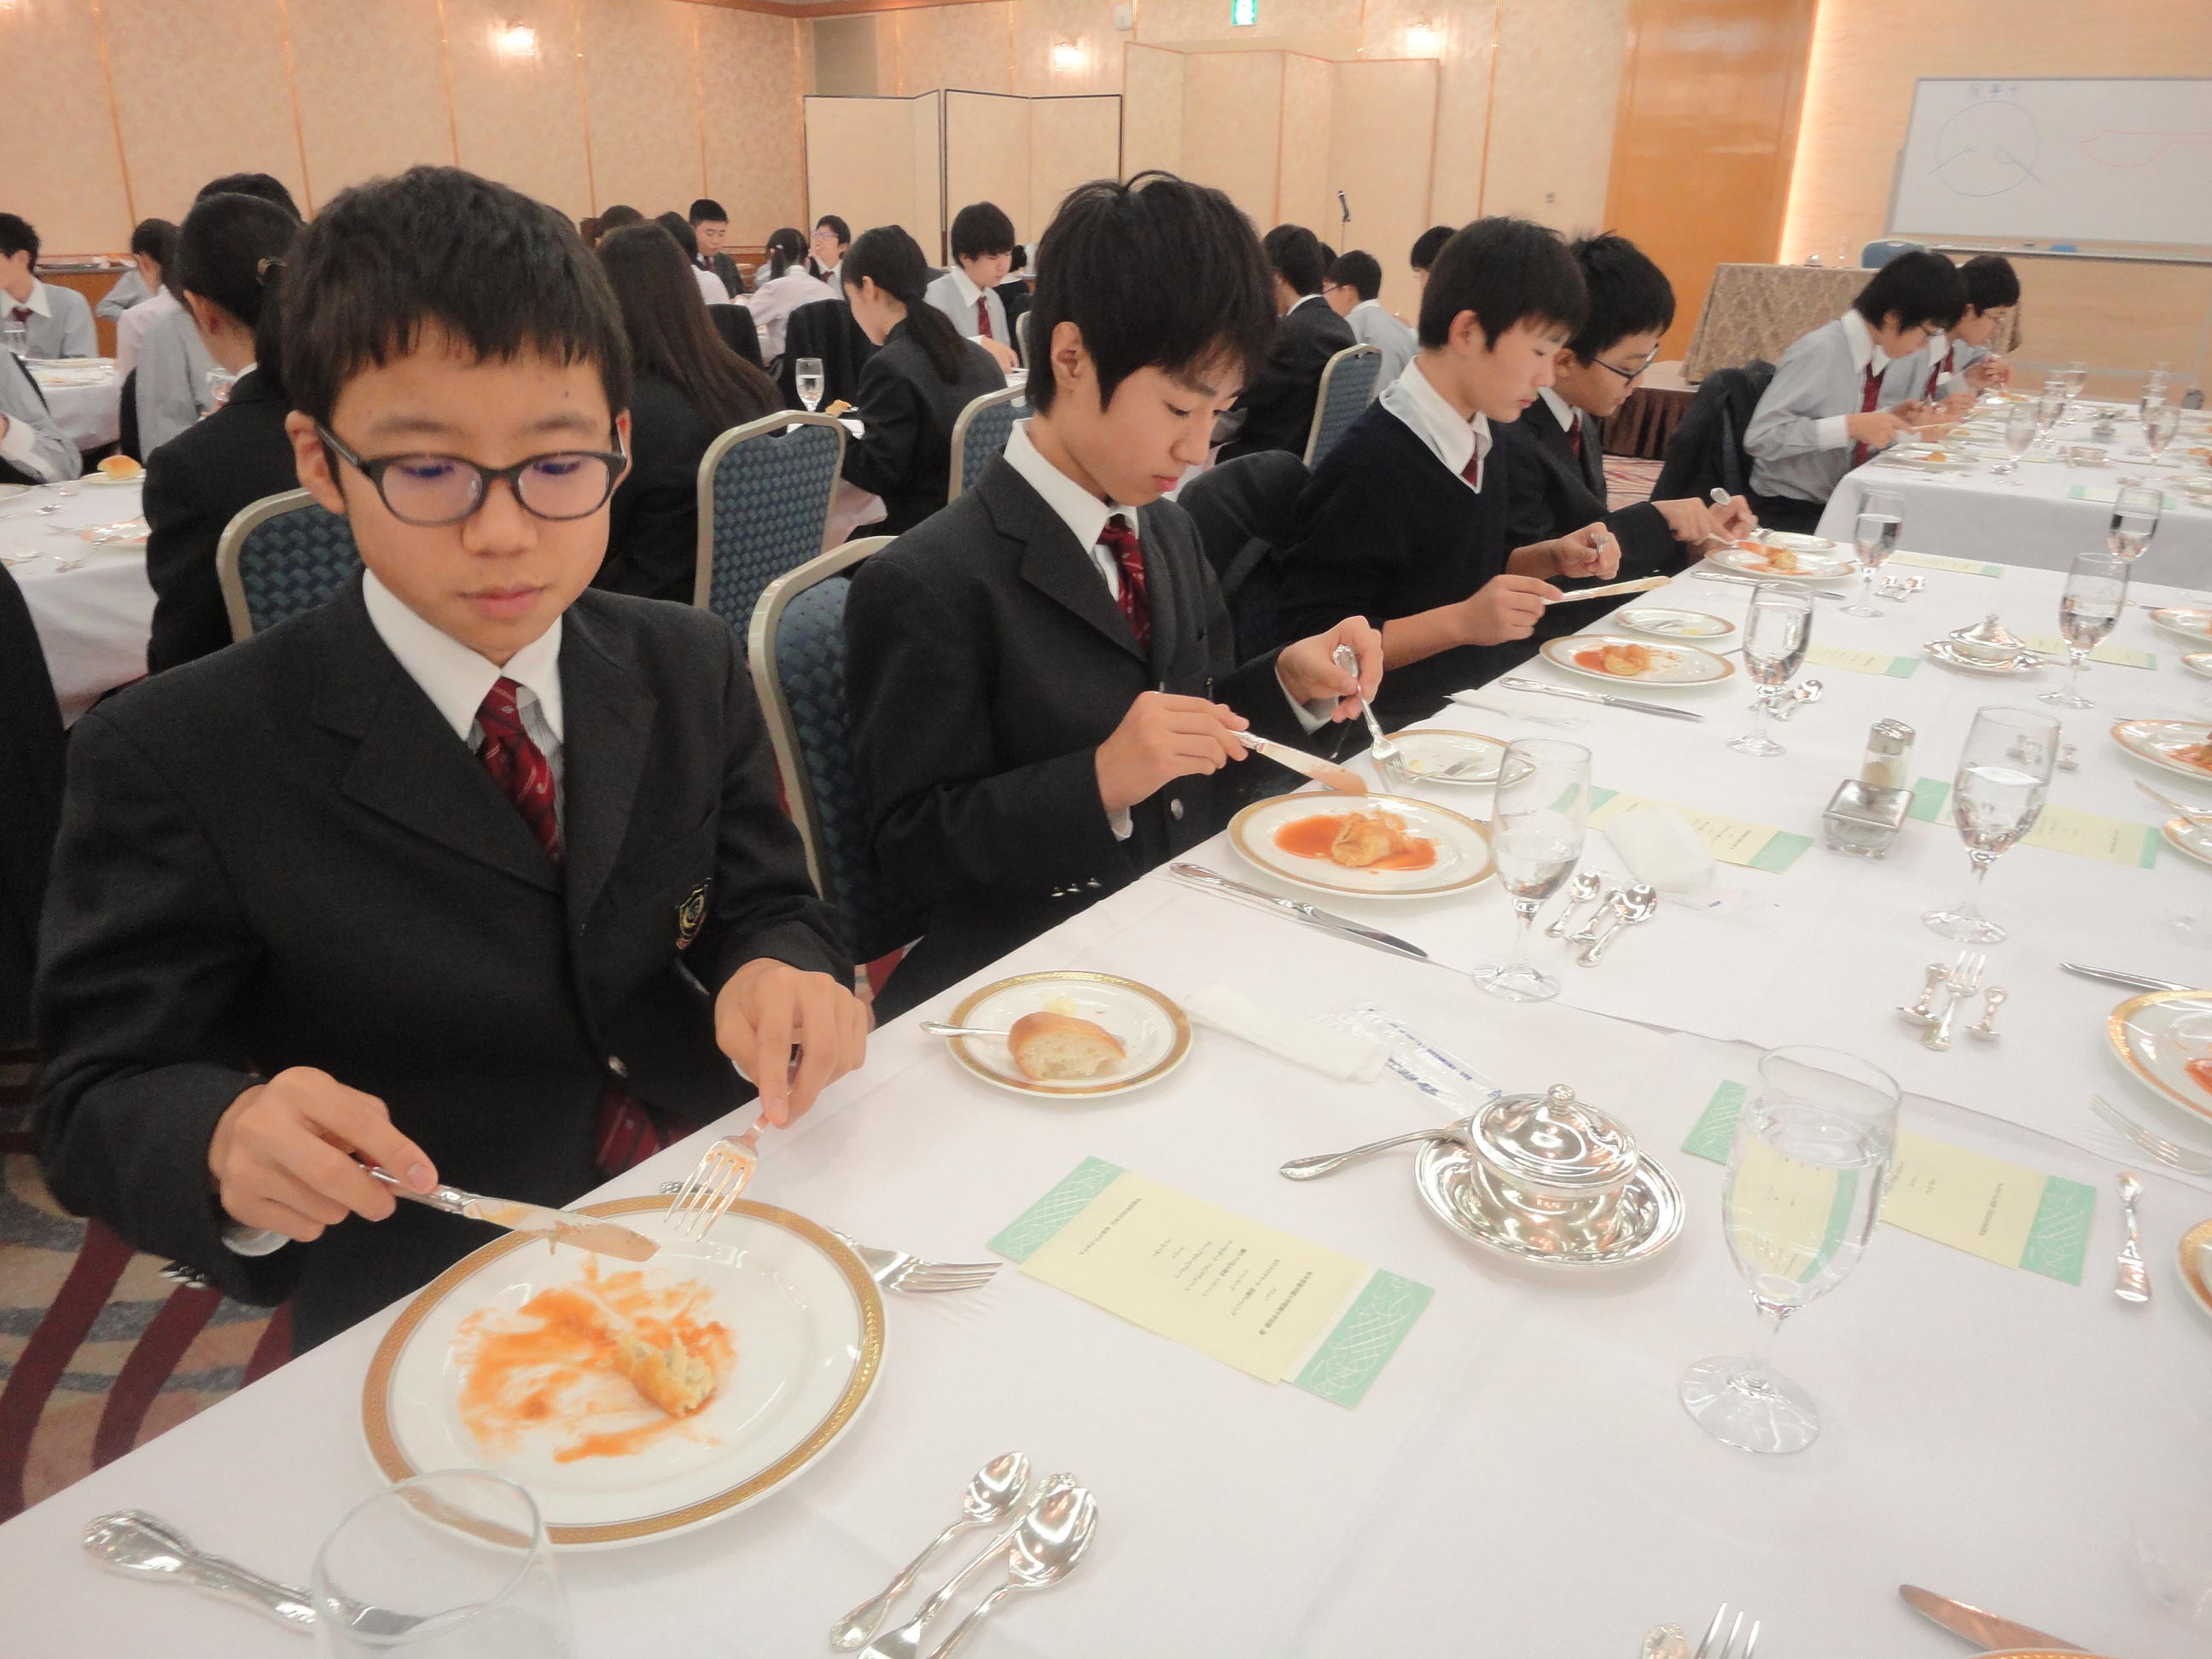 洋食のテーブルマナー講座 デイリースナップで見る学びのポイント 岐阜聖徳学園大学附属中学校